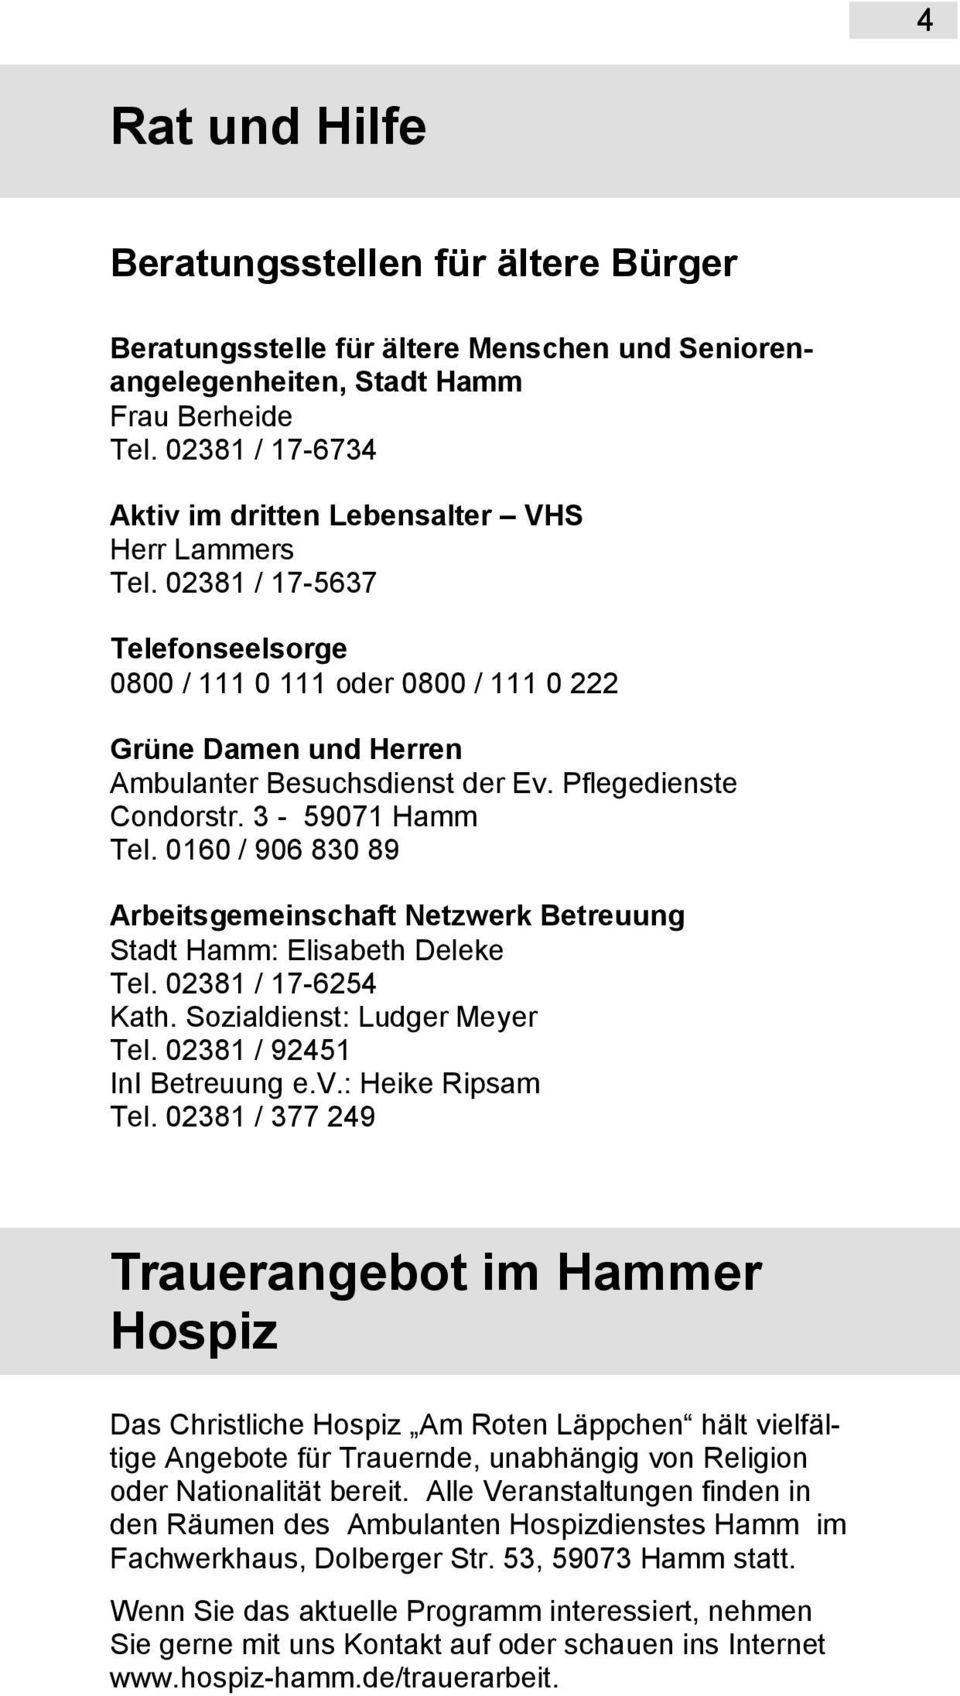 Pflegedienste Condorstr. 3-59071 Hamm Tel. 0160 / 906 830 89 Arbeitsgemeinschaft Netzwerk Betreuung Stadt Hamm: Elisabeth Deleke Tel. 02381 / 17-6254 Kath. Sozialdienst: Ludger Meyer Tel.